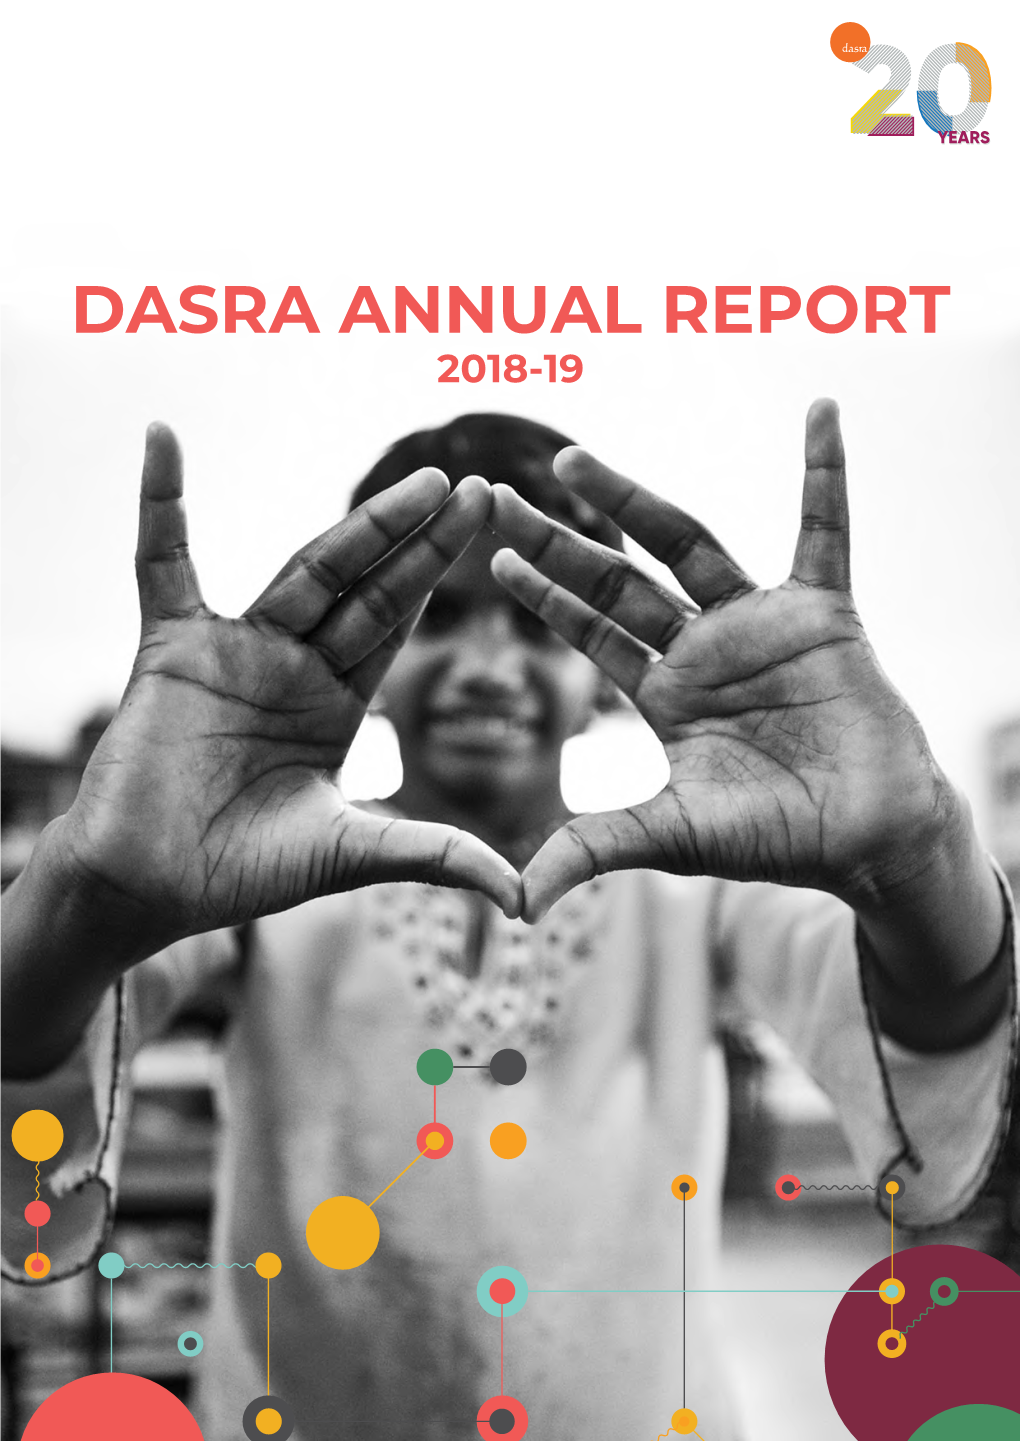 DASRA ANNUAL REPORT 2018-19 Contents